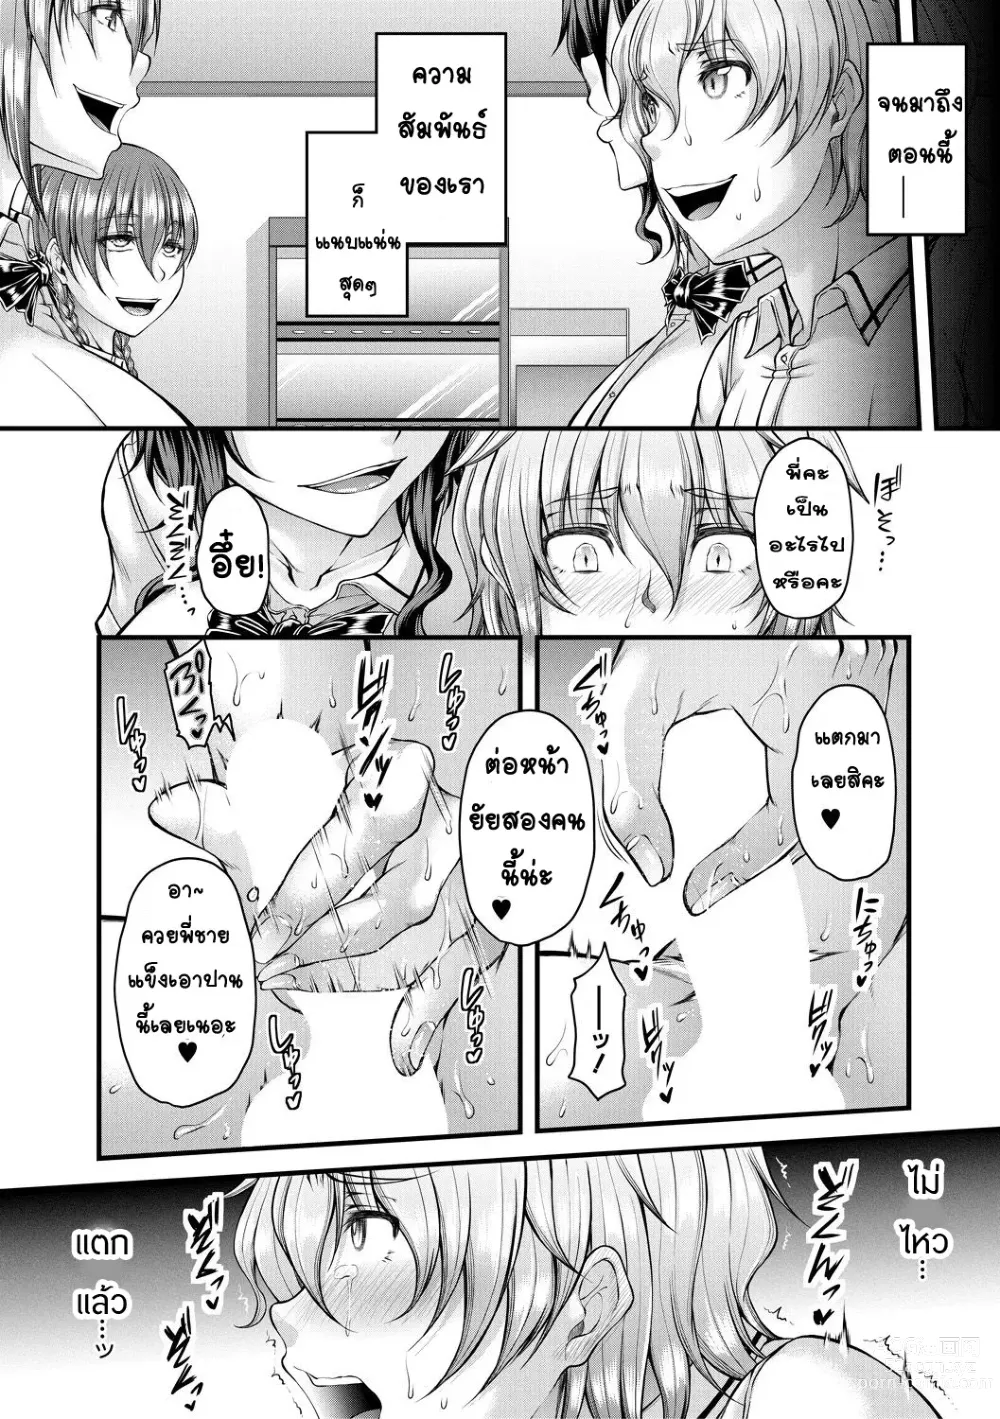 Page 6 of manga kakitsubata Kanae yoru onna ryushi wa han me rarenai 1